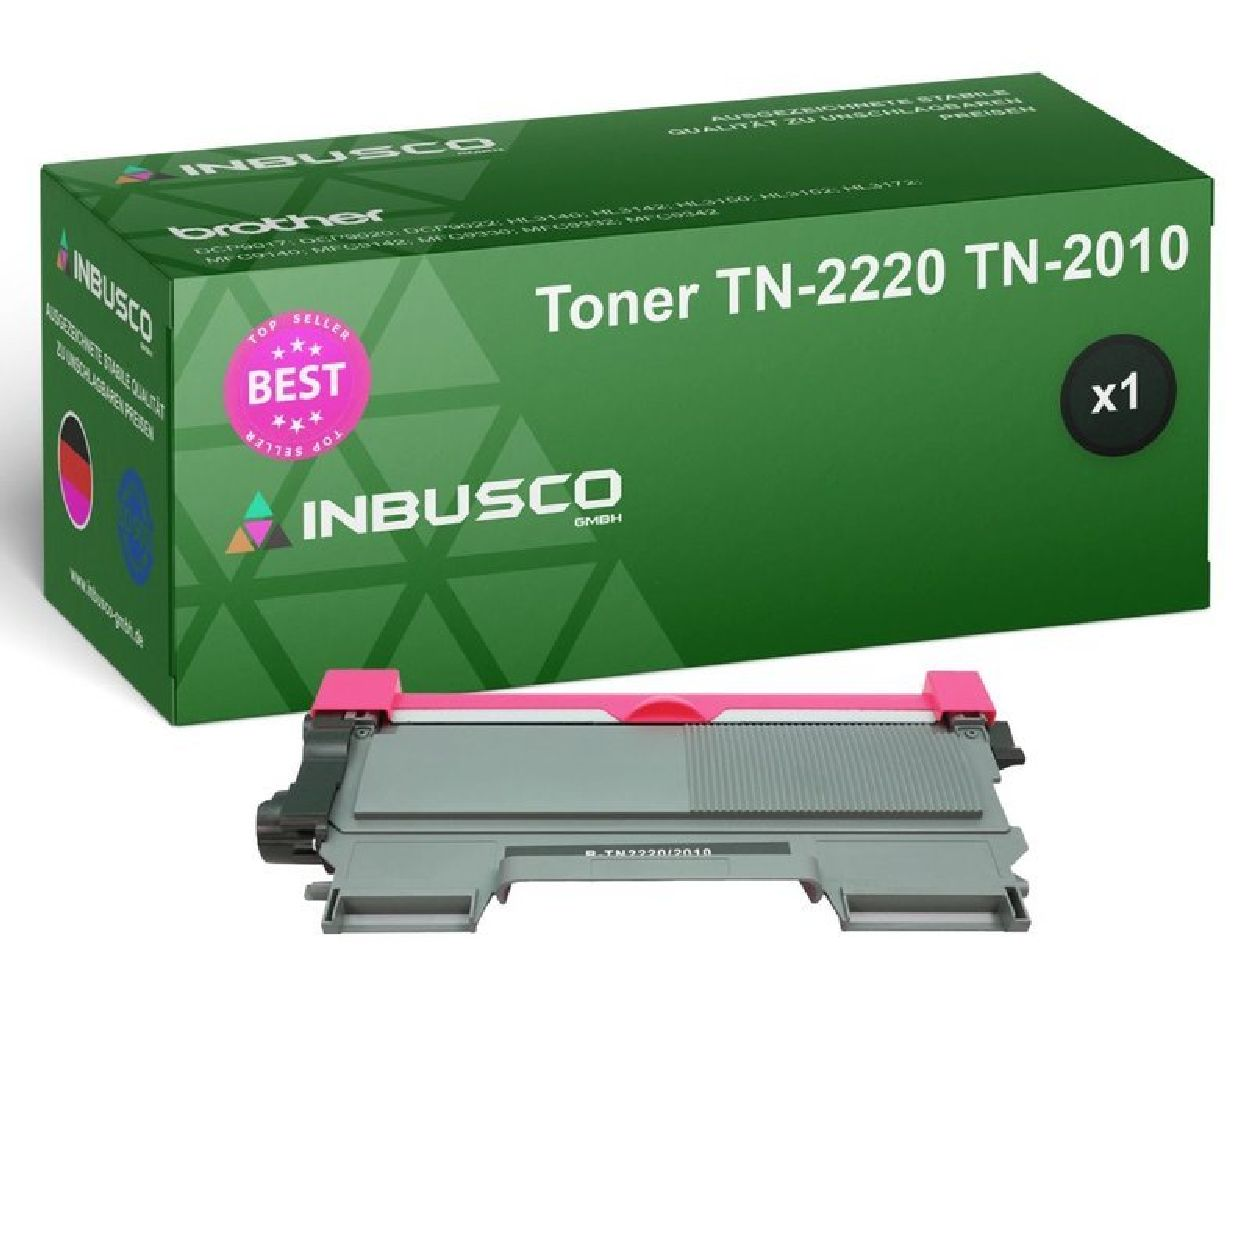 INBUSCO / KUBIS TN-1050 Schwarz 3480 (TN-1050-3480TonerBrother-VAR1xTN-2220TN-2010) - TN-2220 TN-2010 Toner